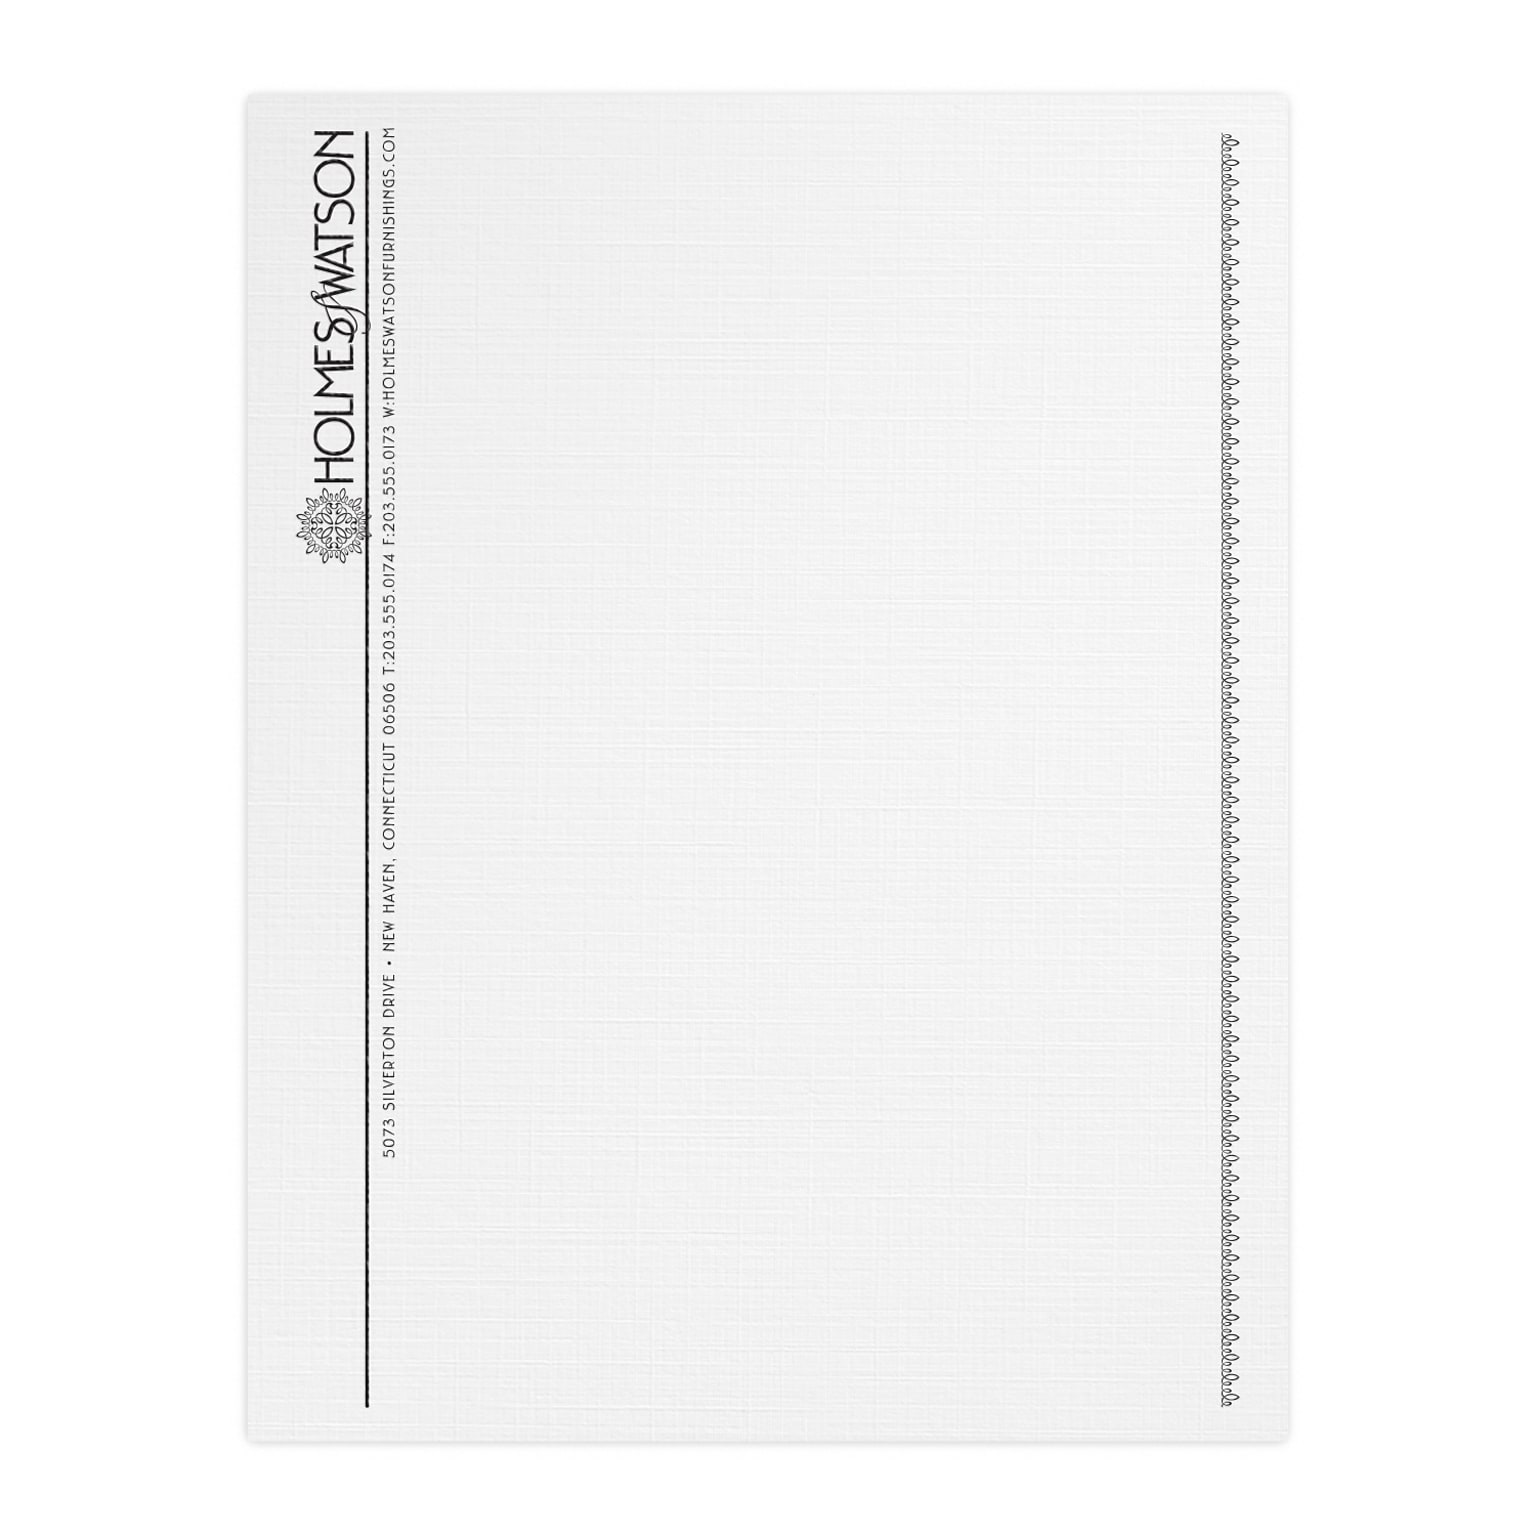 Custom 1 & 2 Color Letterhead, 8.5 x 11, CLASSIC® Linen Solar White 24# Stock, 1 Standard Ink, Raised Print